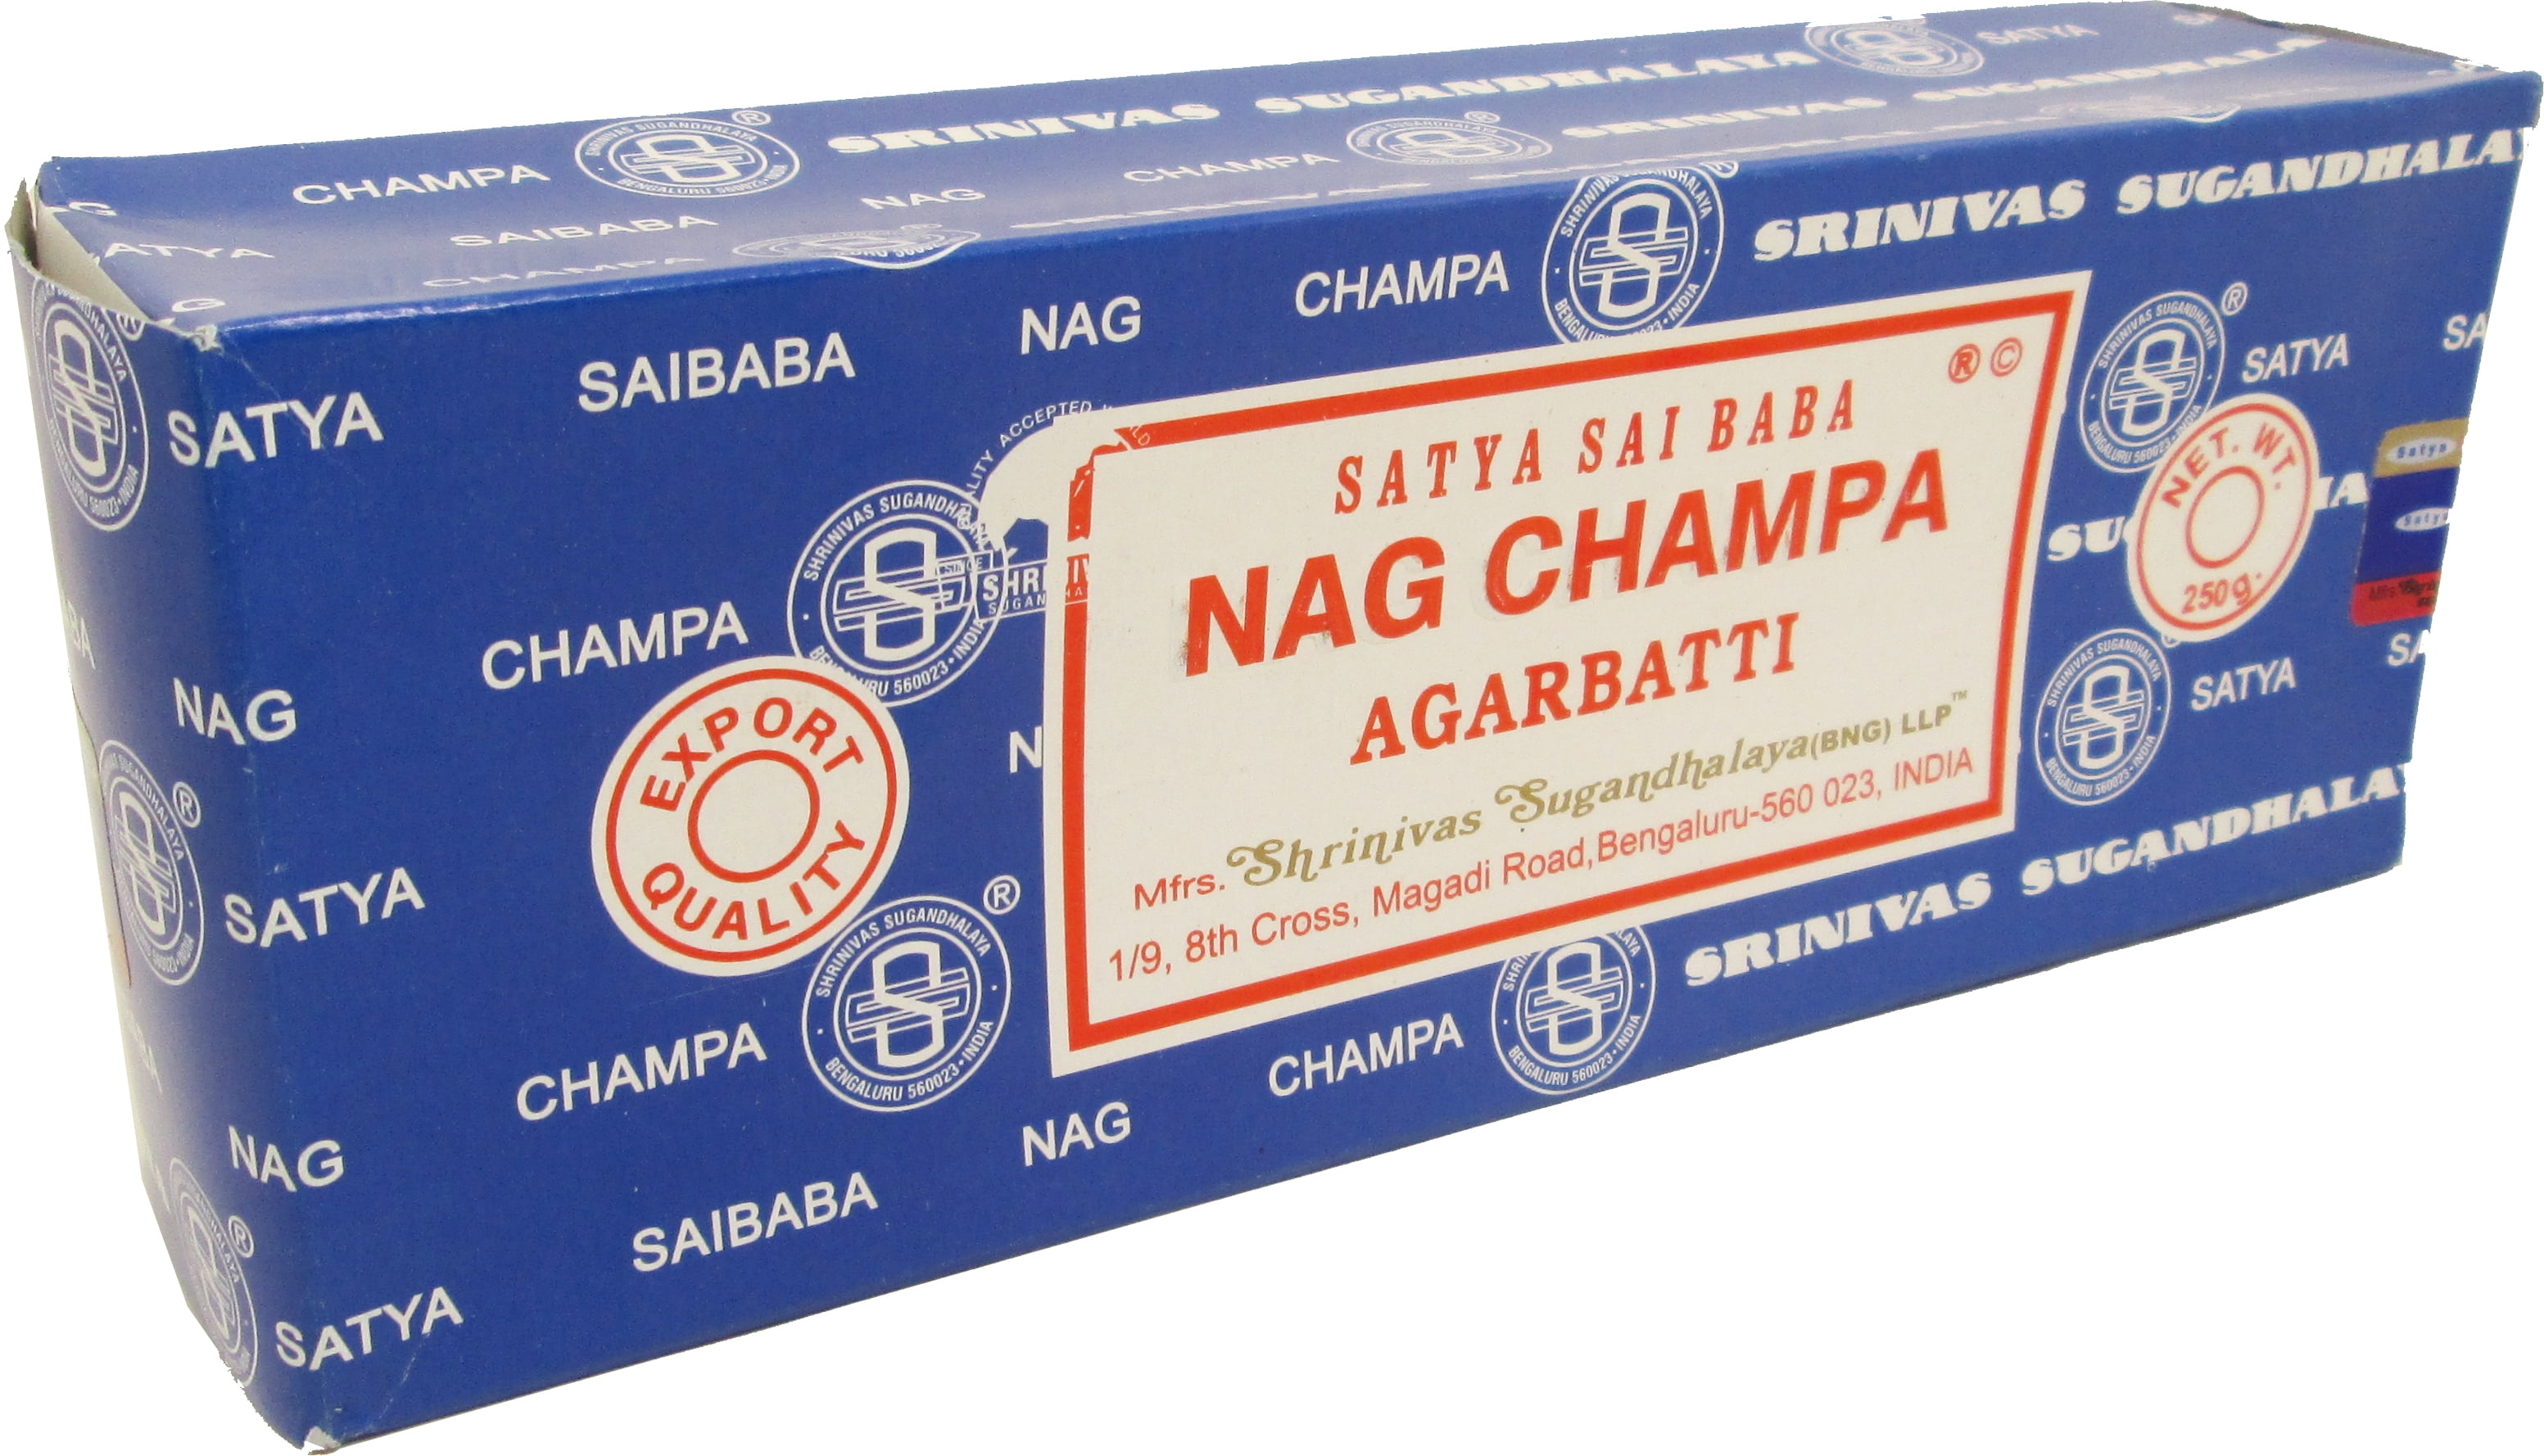 8 Box Nag Champa & 4 Box Super Hit Satya Sai Baba Incense 15 Grams per Box 2017 